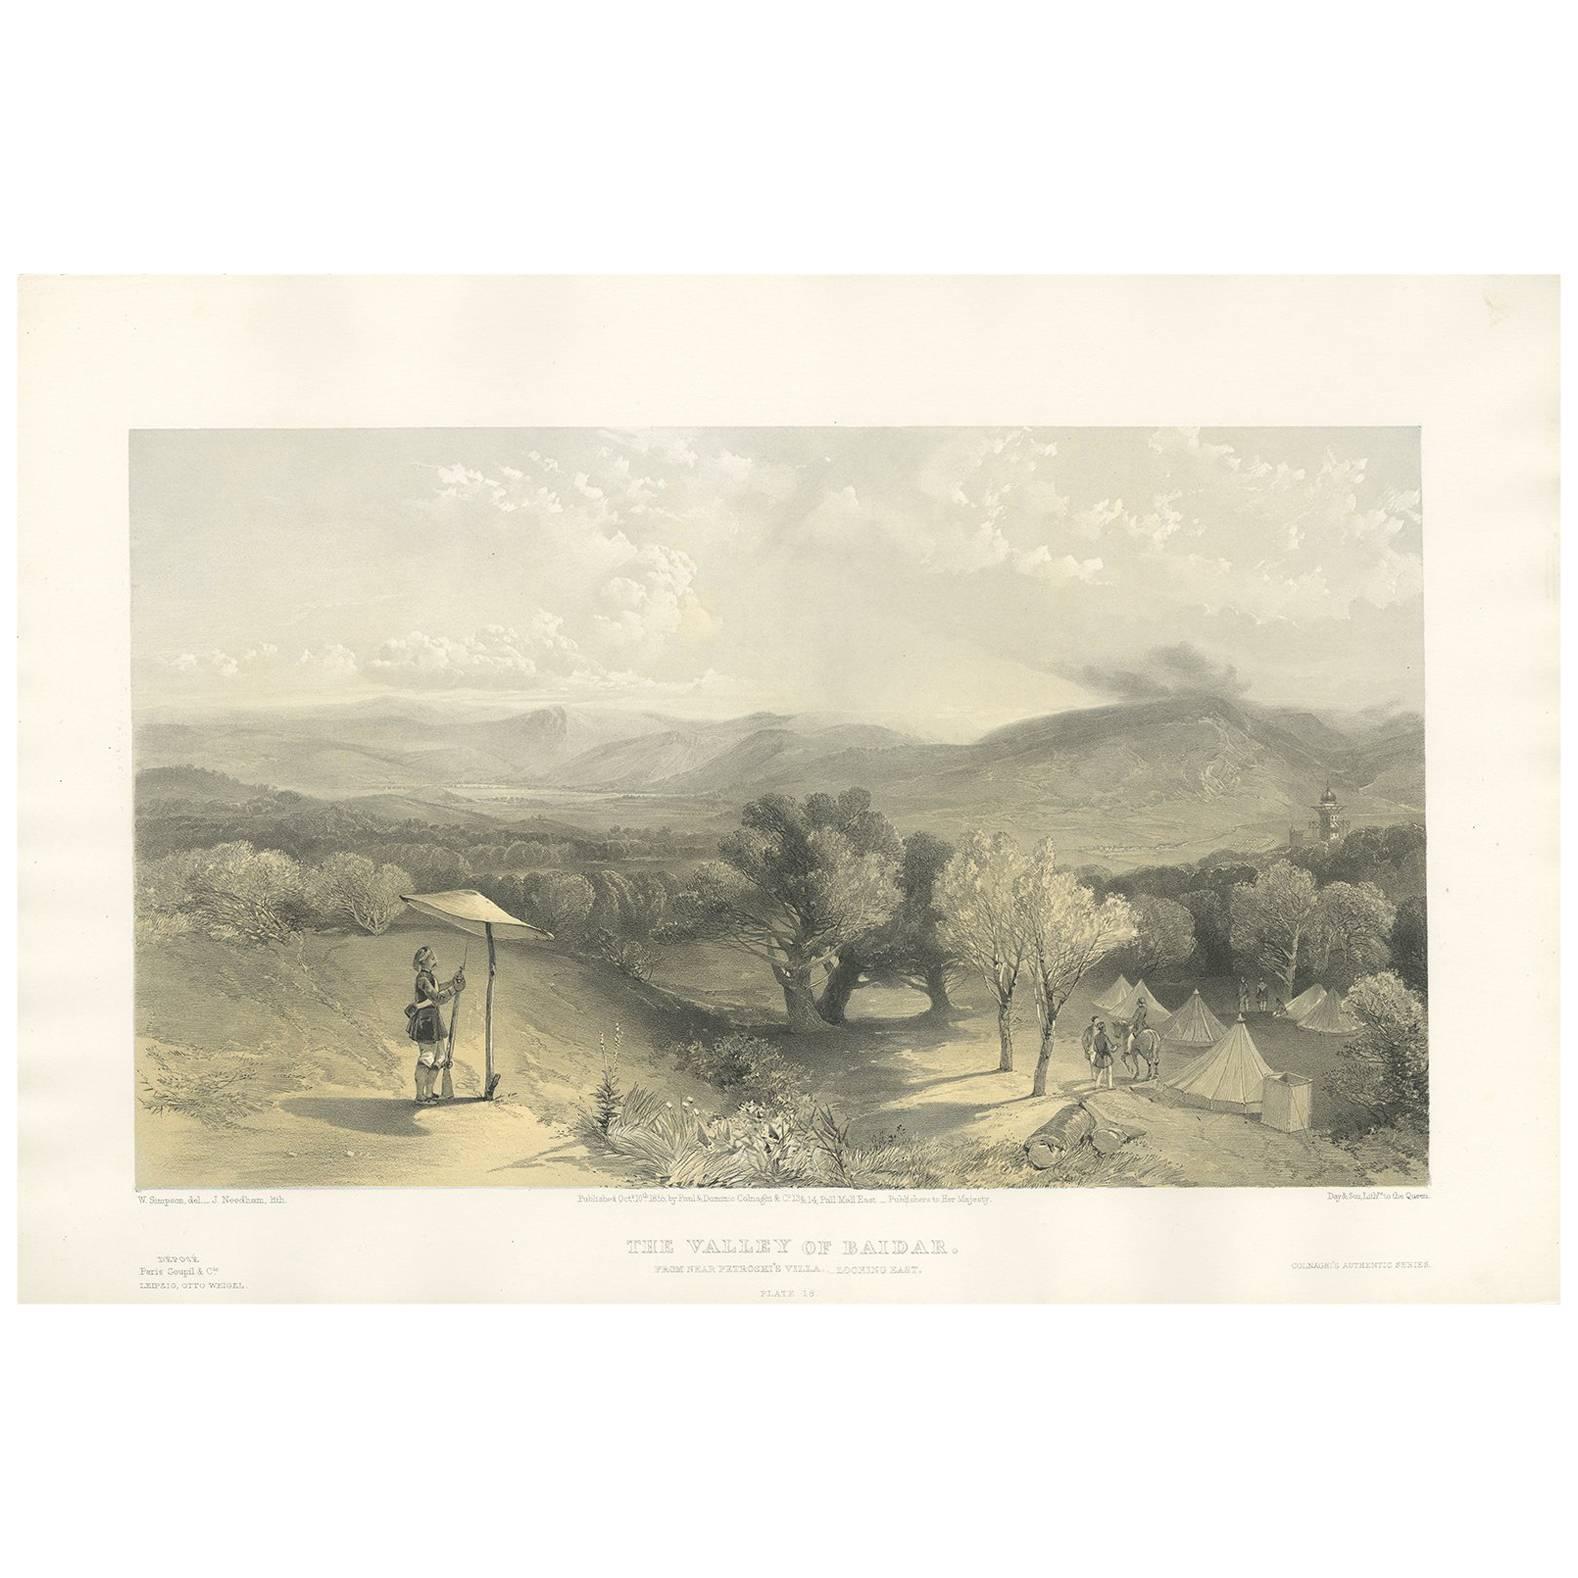 Impression ancienne de la vallée de Baidar « La guerre durime » par W. Simpson, 1855